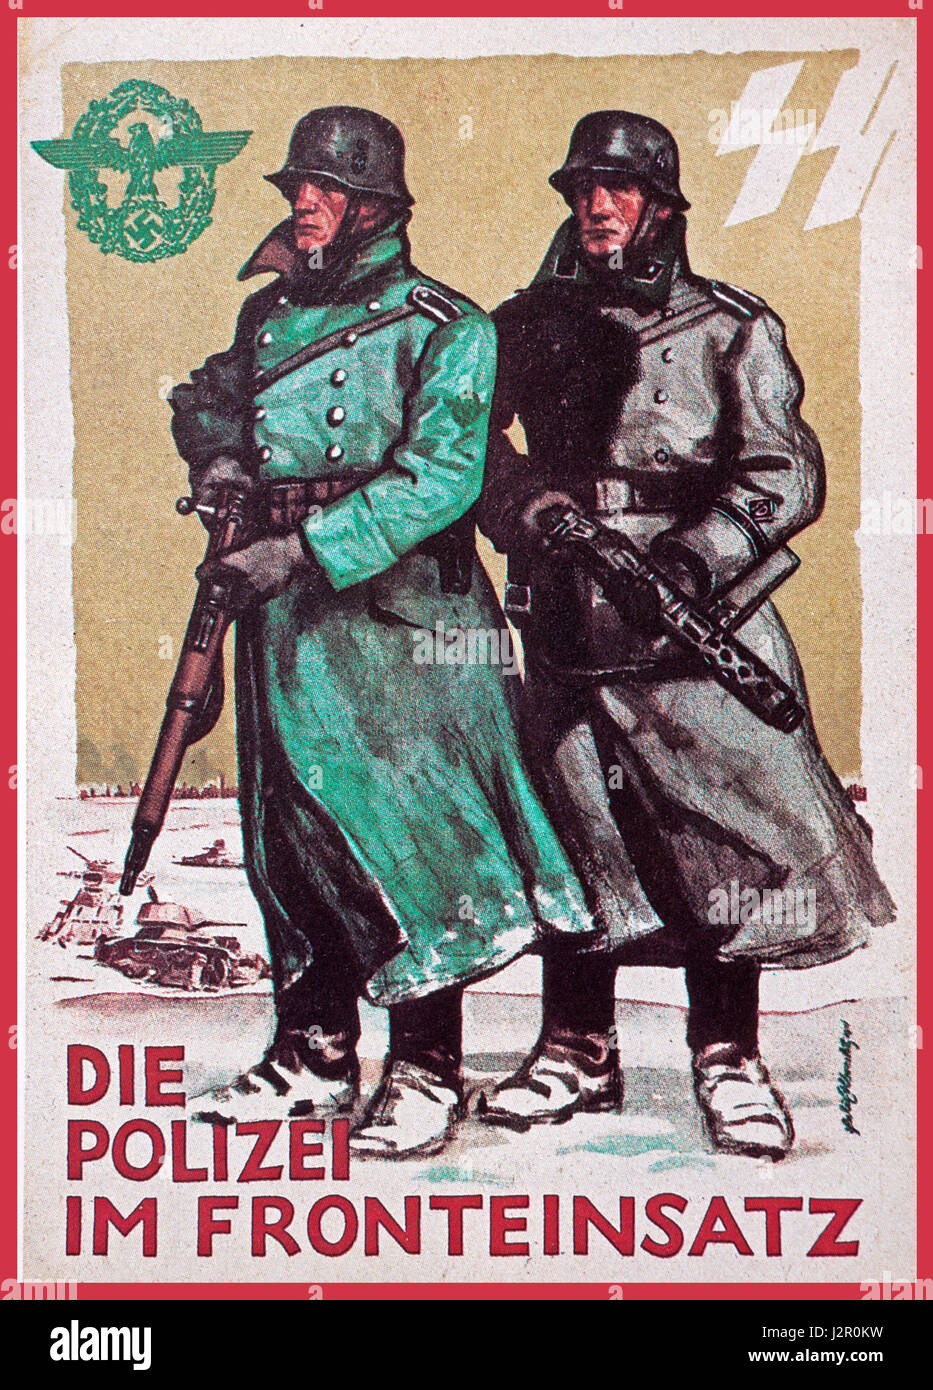 La Seconde Guerre mondiale, 2 carte postale de propagande officielle de l'Allemagne nazie sous-titrées "la police dans les lieux d' sur le front de l'offensive d'hiver russe Banque D'Images